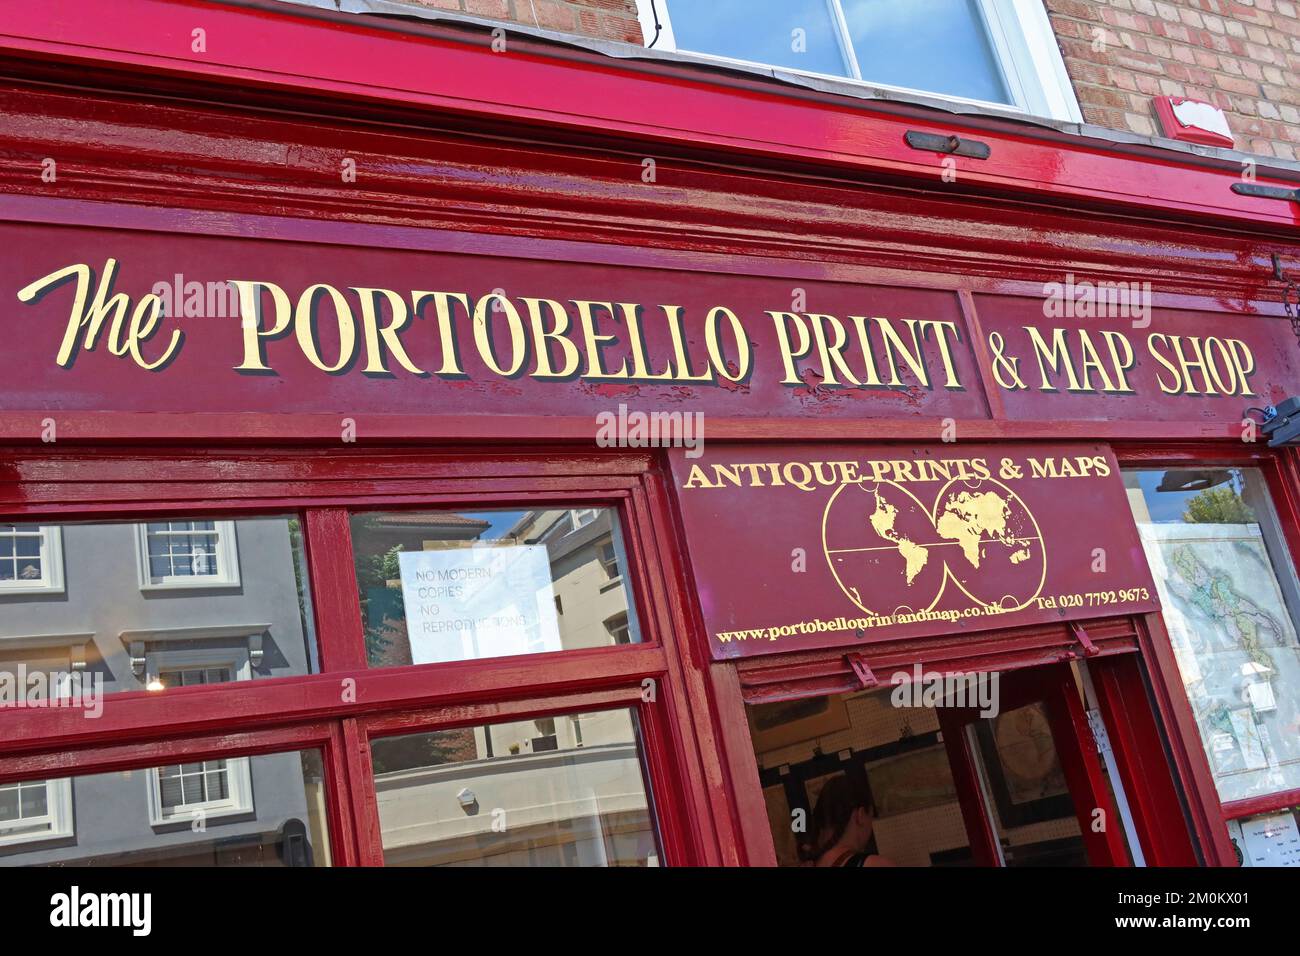 The Portobello Print & Map Shop, 109 Portobello Rd, Notting Hill, RBKC, London, England, UK, W11 2QB Stock Photo